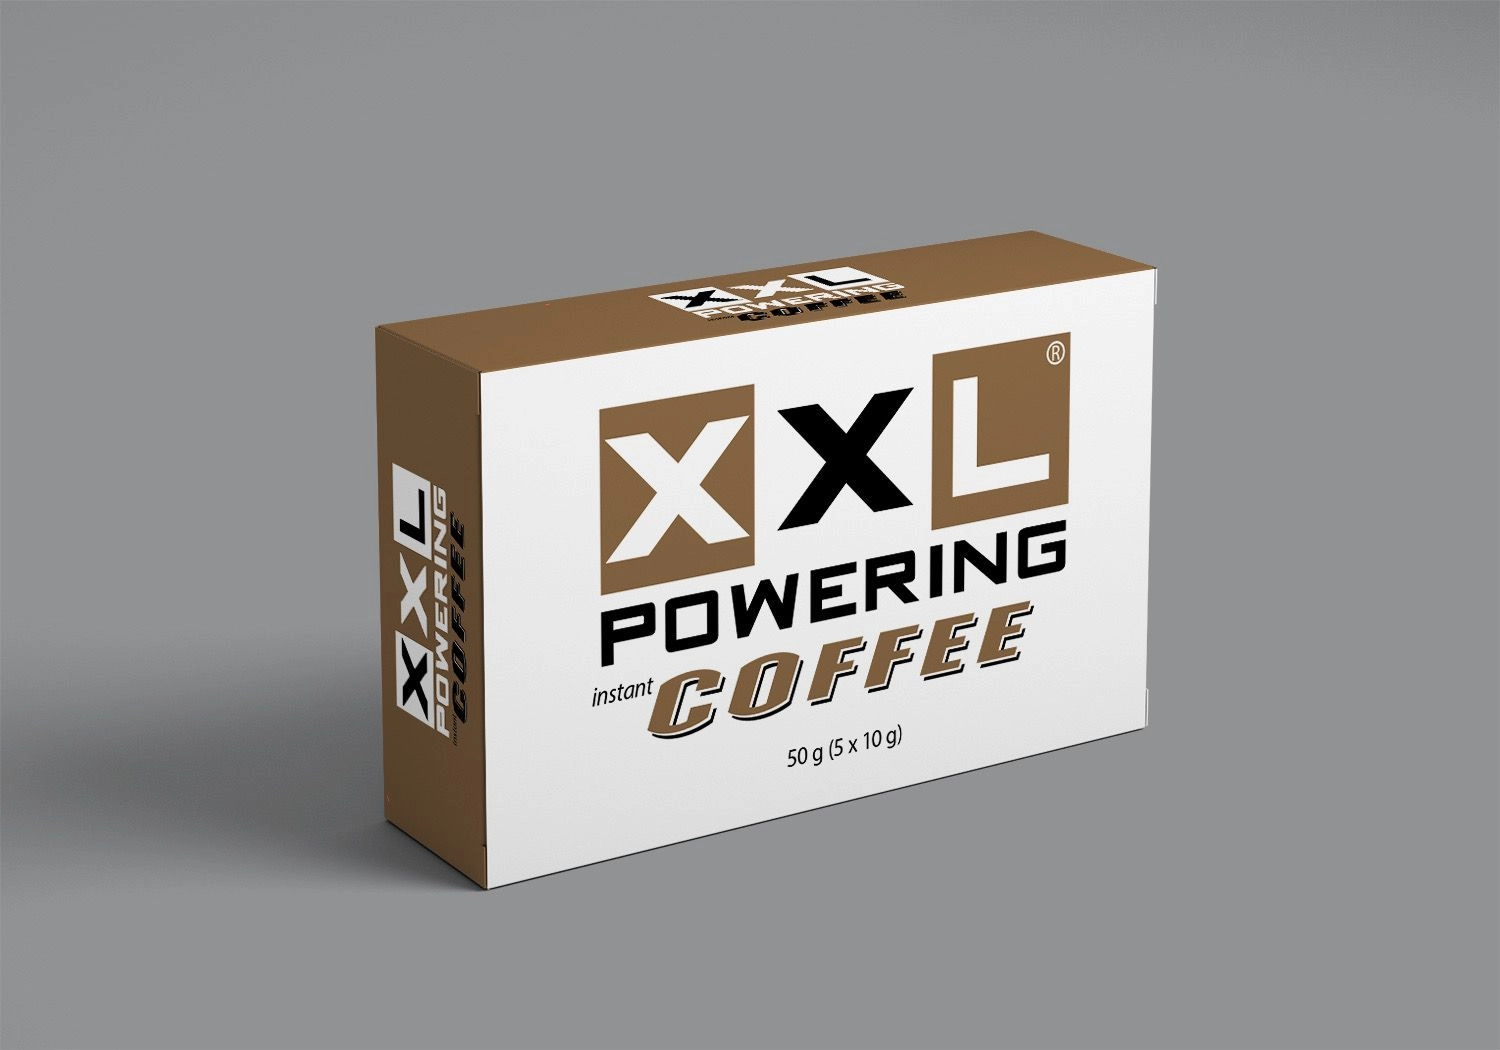 XXL POWERING INSTANT COFFEE - 5 DB